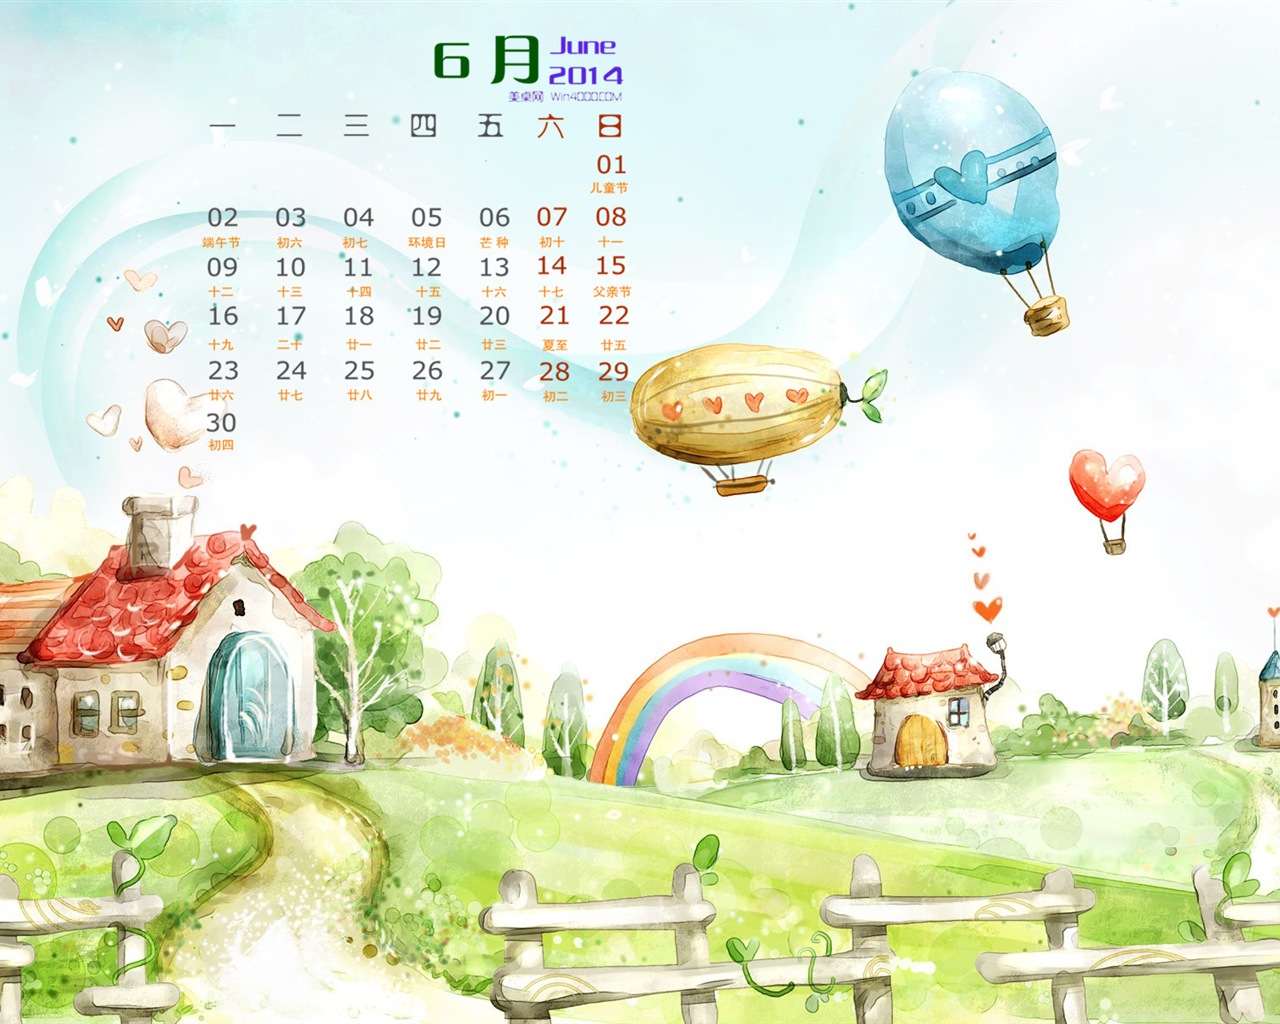 Июнь 2014 календарь обои (1) #10 - 1280x1024